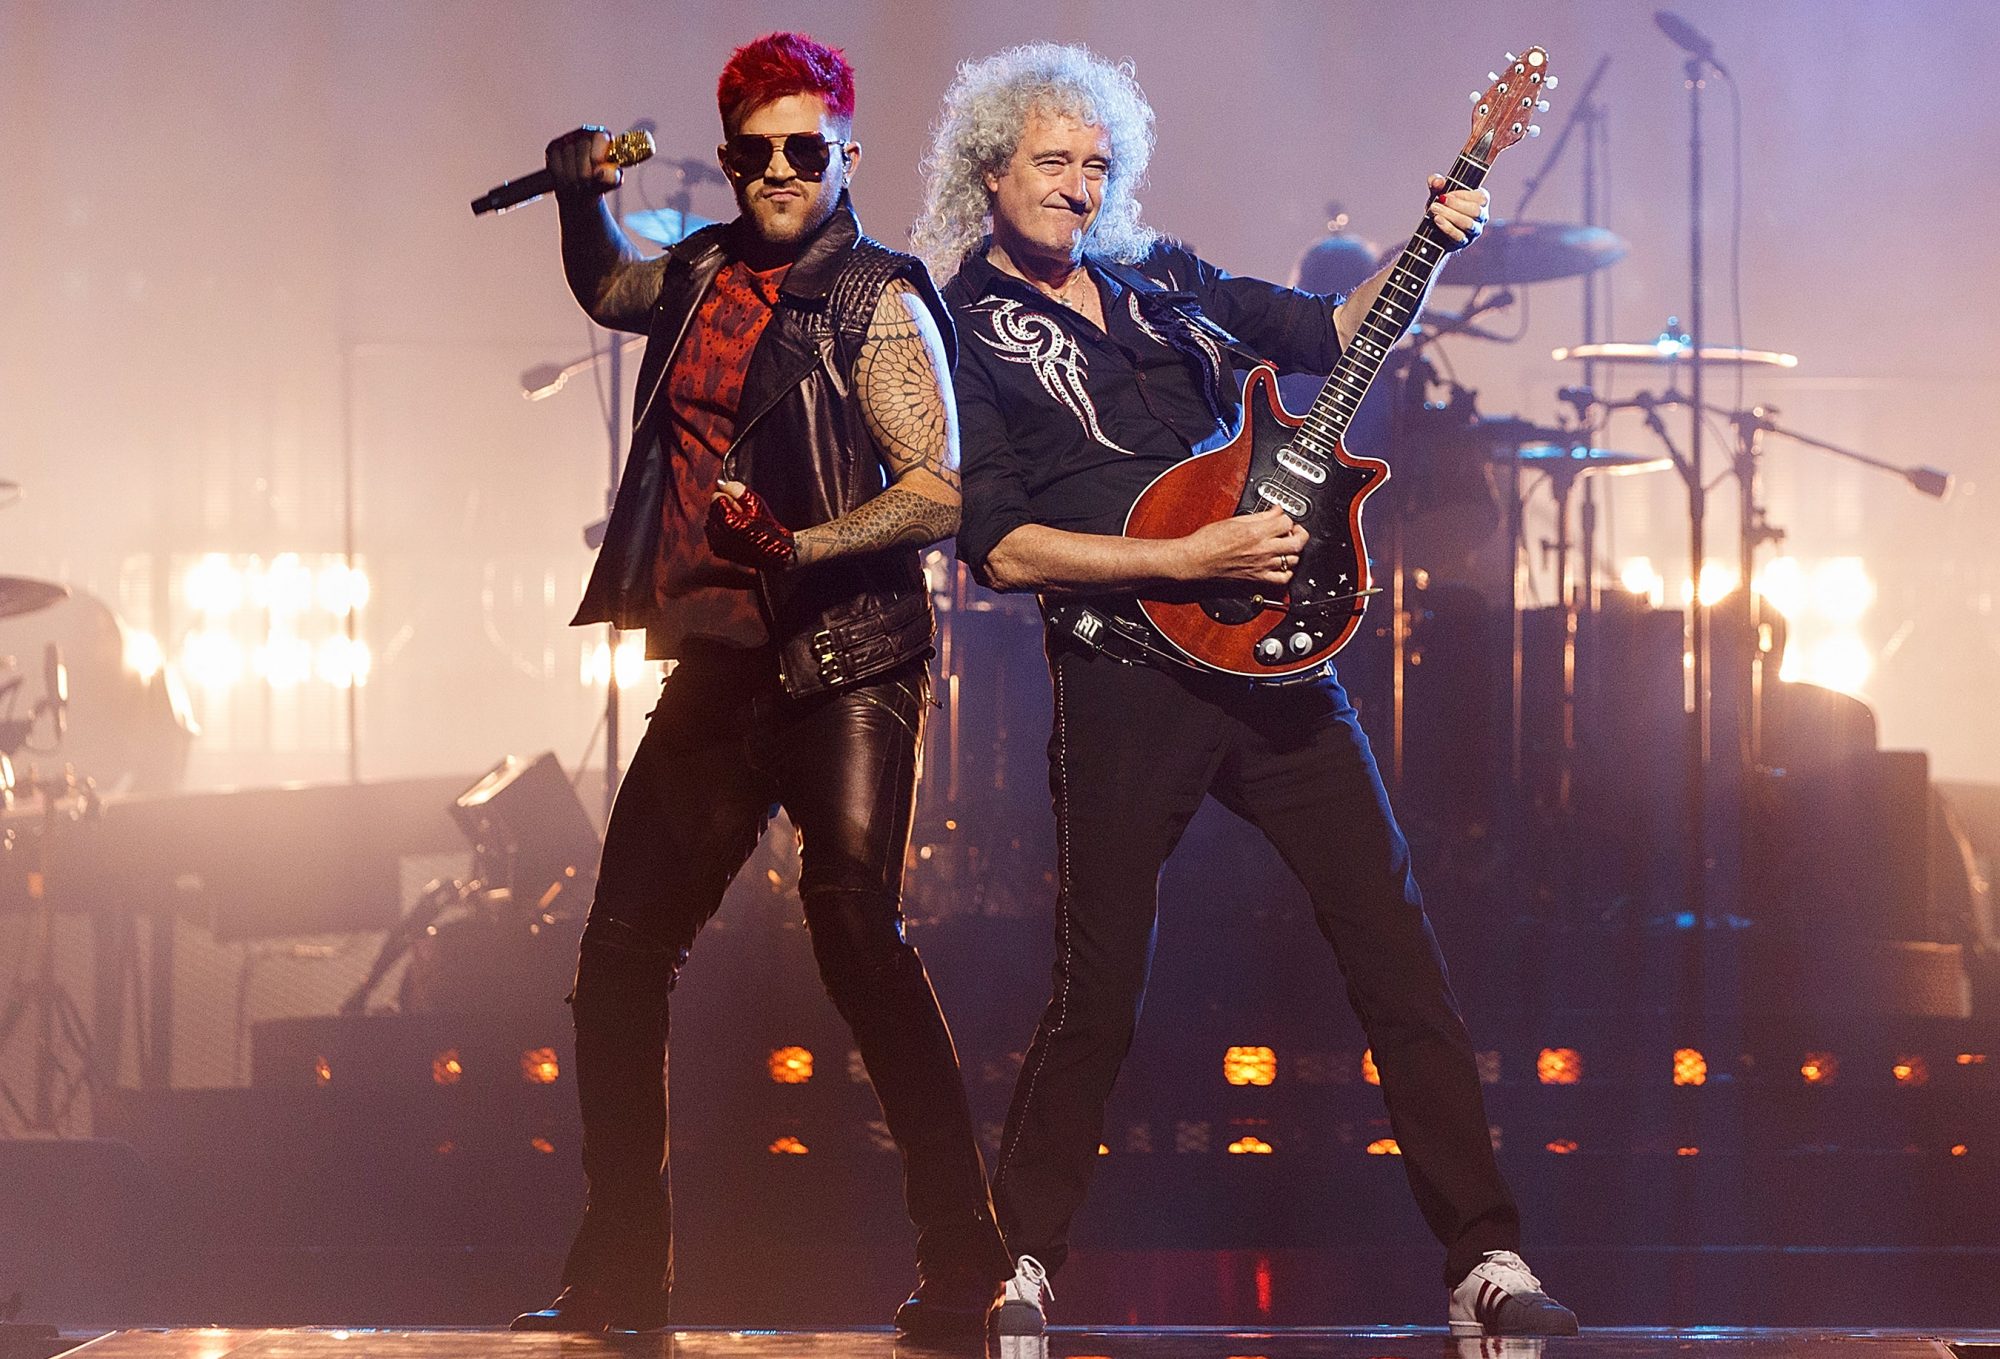 Adam Lambert and Queen